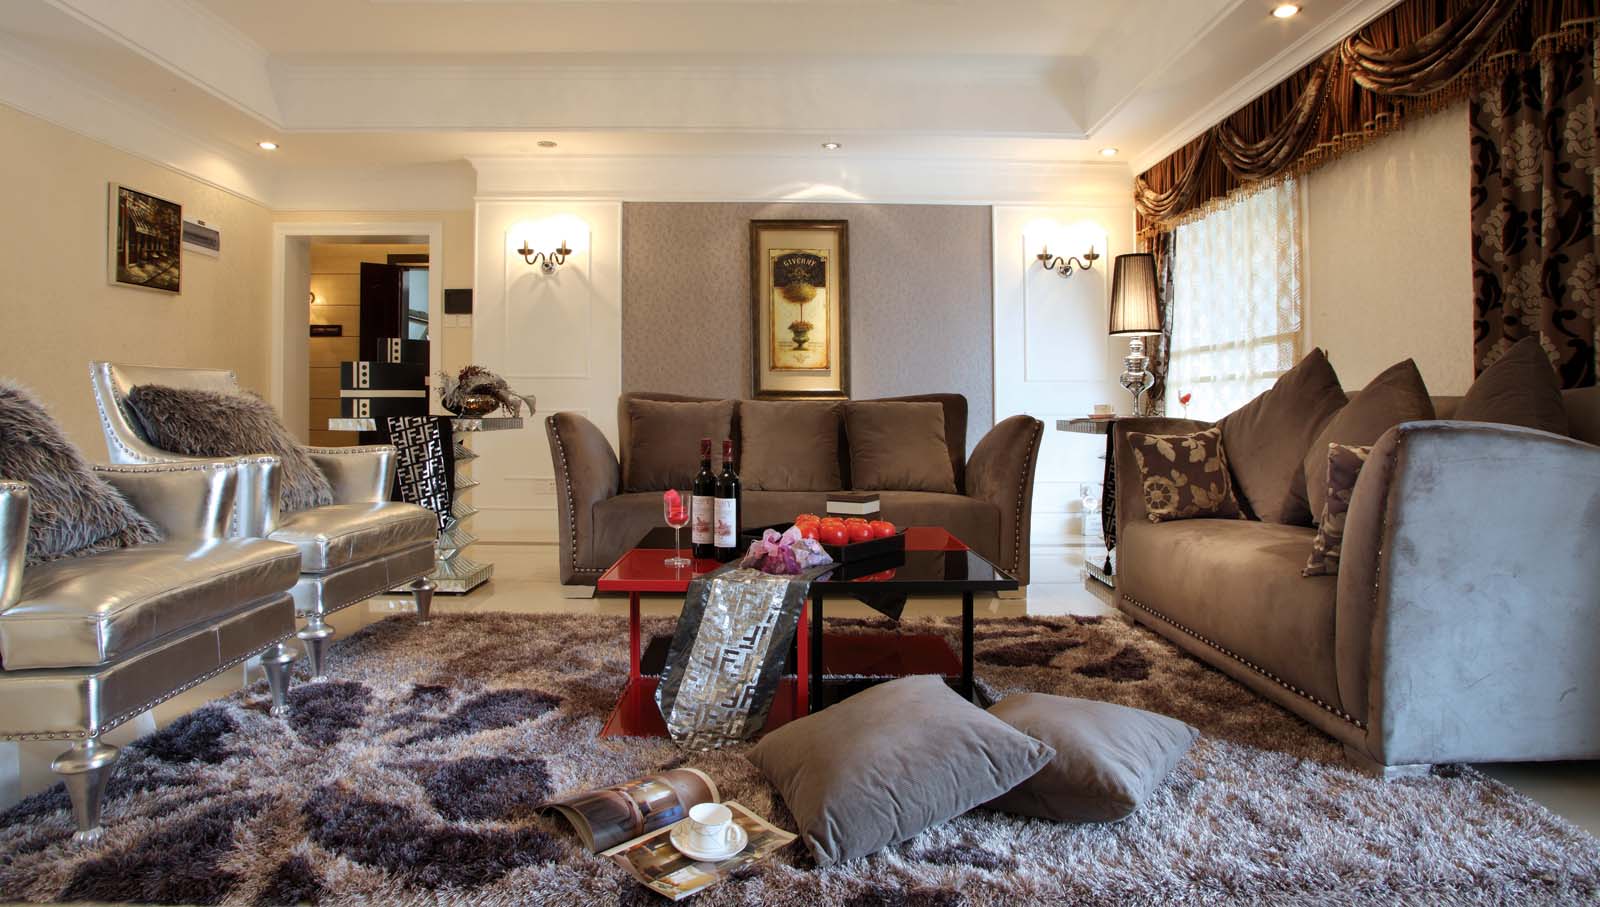 美式 家庭装修 客厅图片来自小若爱雨在家和盛世的分享